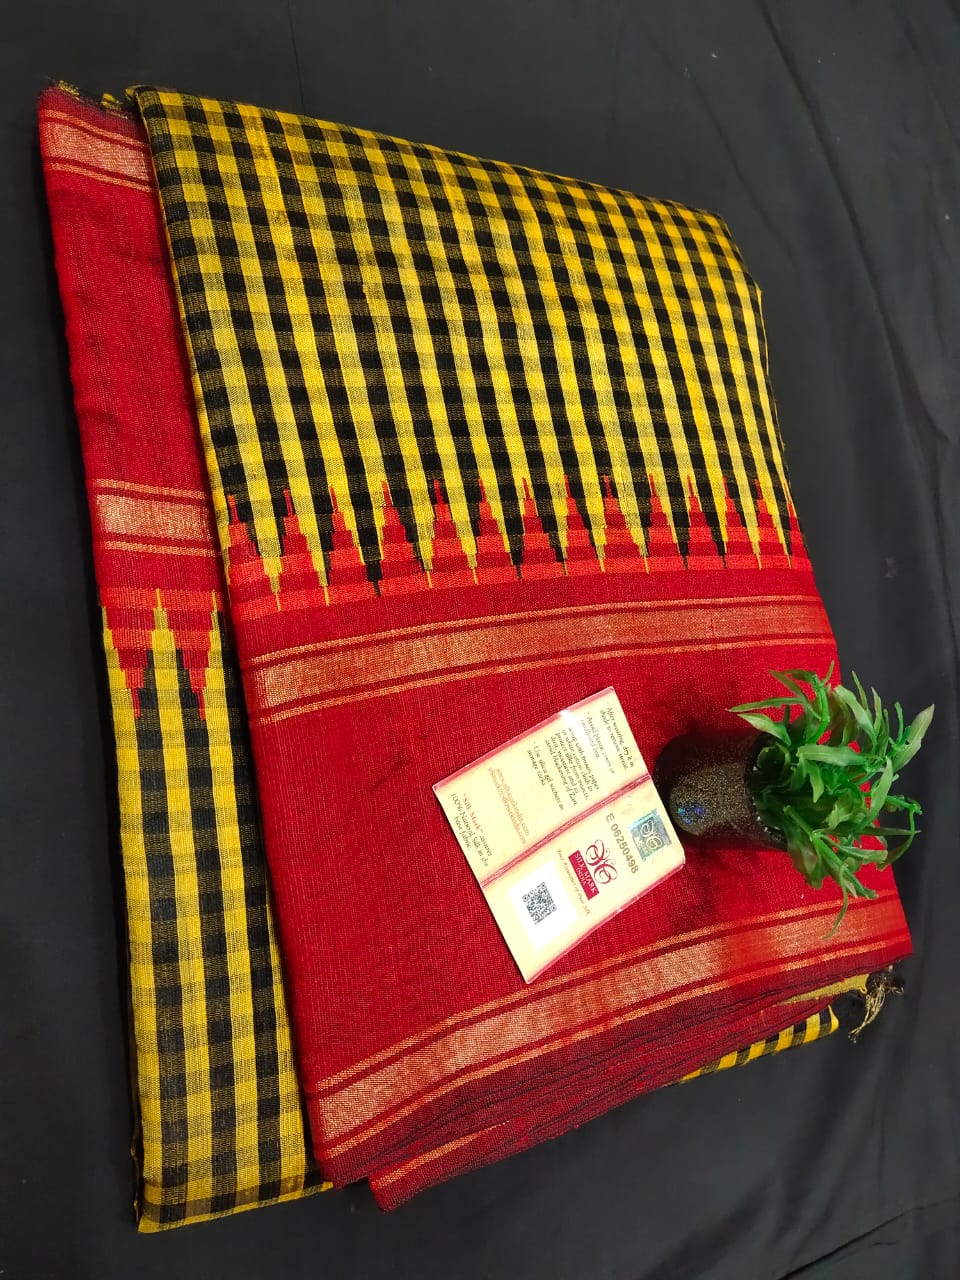 Pure Raw Silk Saree with temple border and mini checks